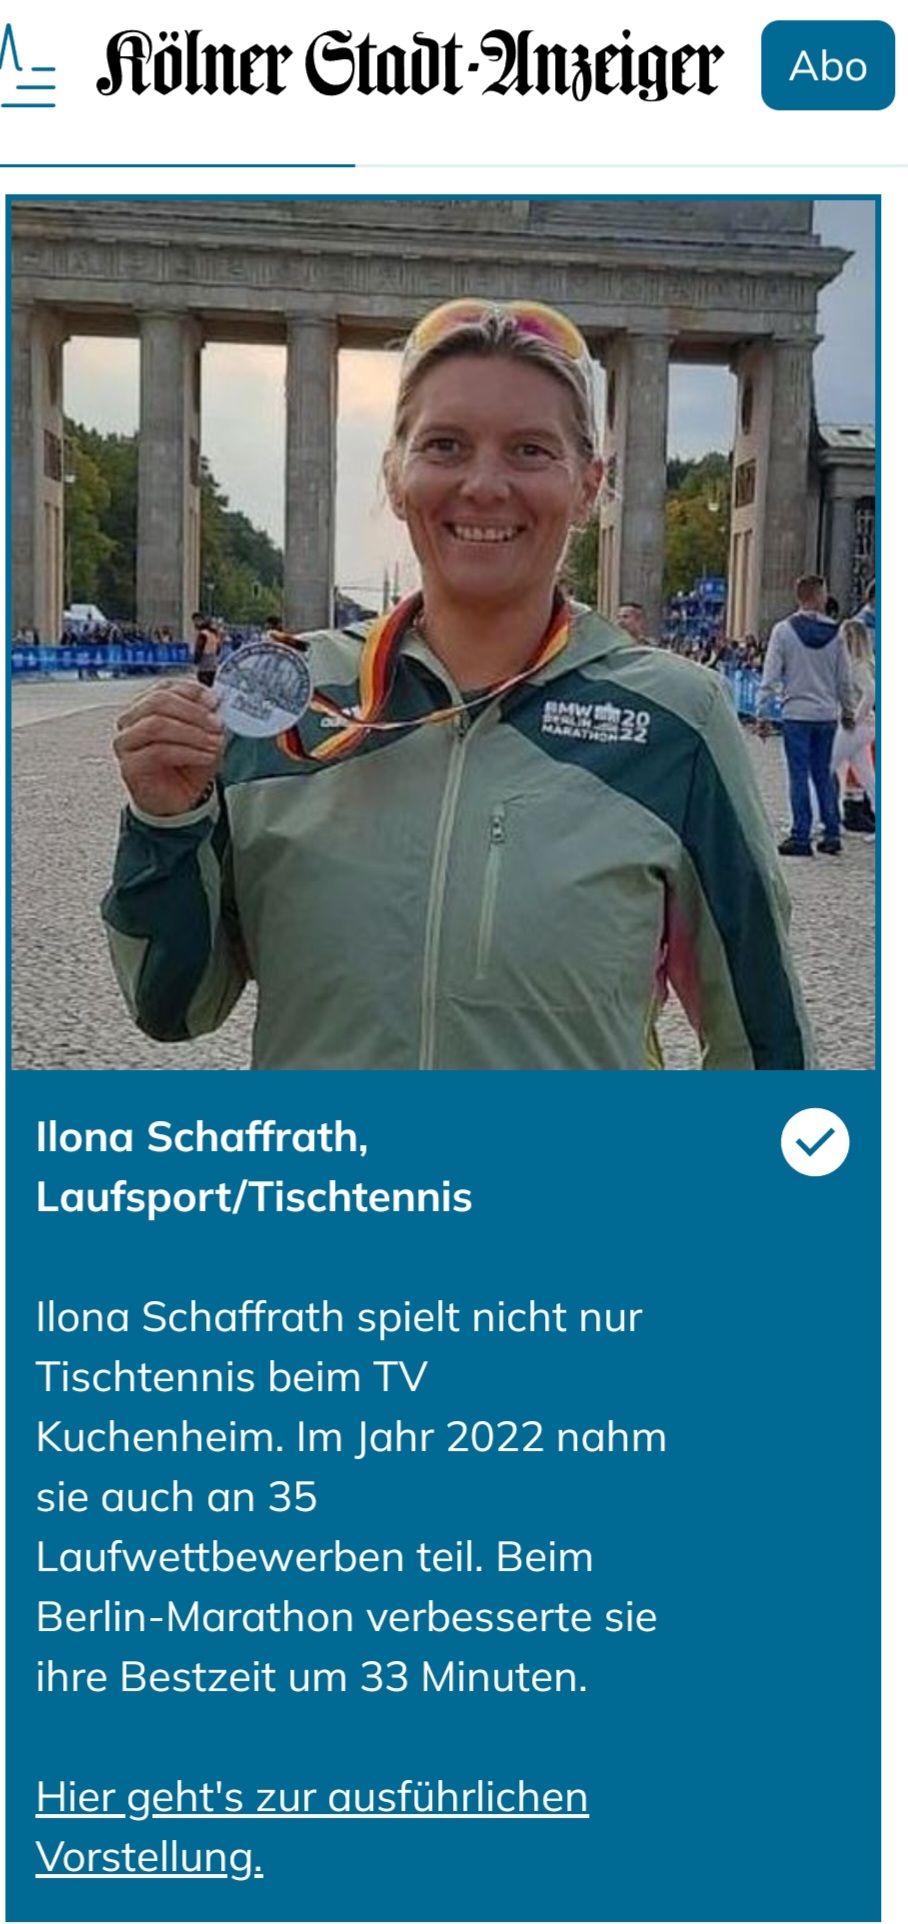 Ilona Schaffrath